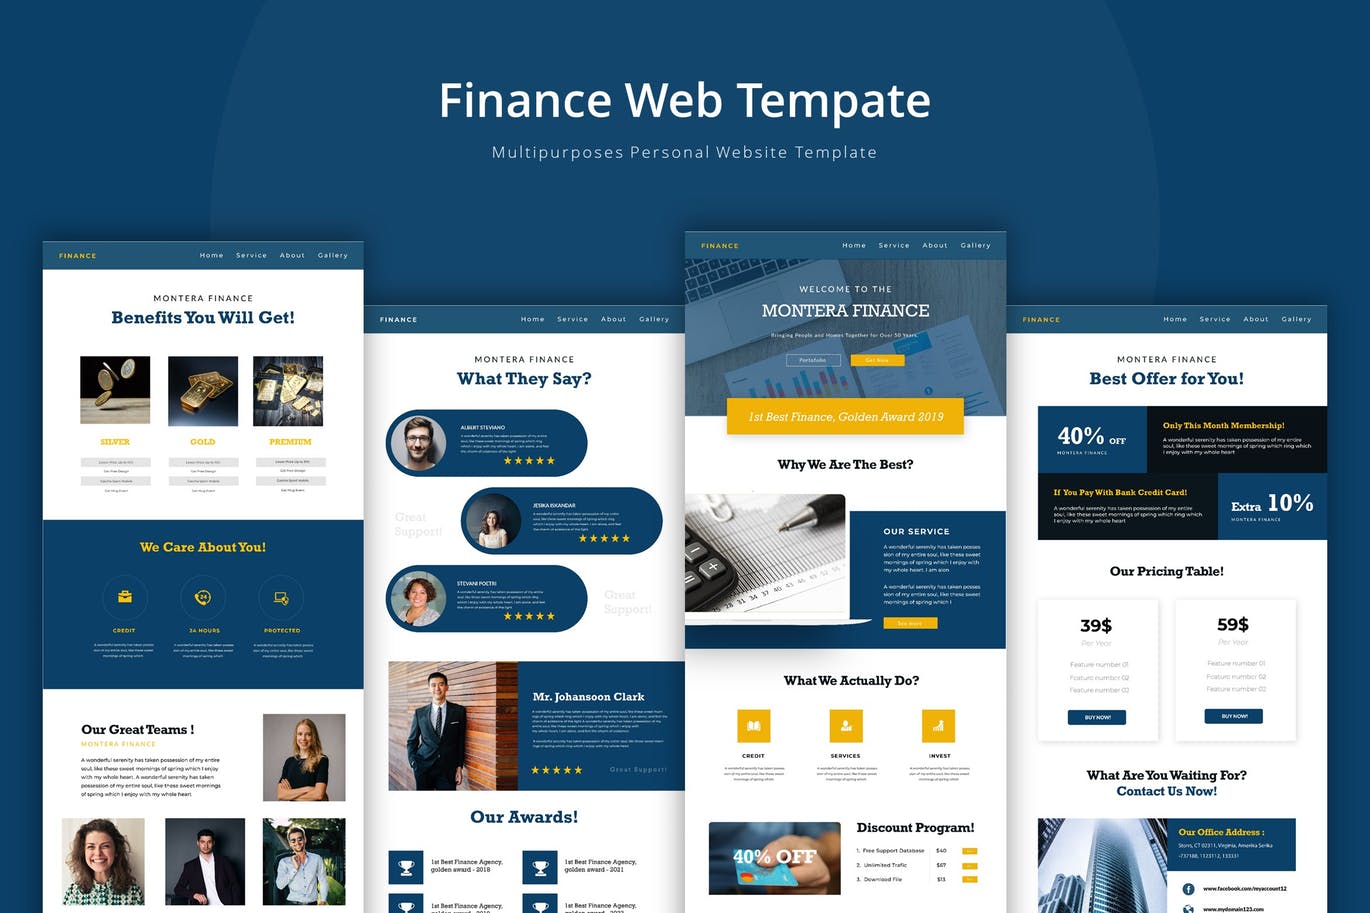 金融理财公司官网企业网站设计蚂蚁素材精选模板 Finance Web Template插图